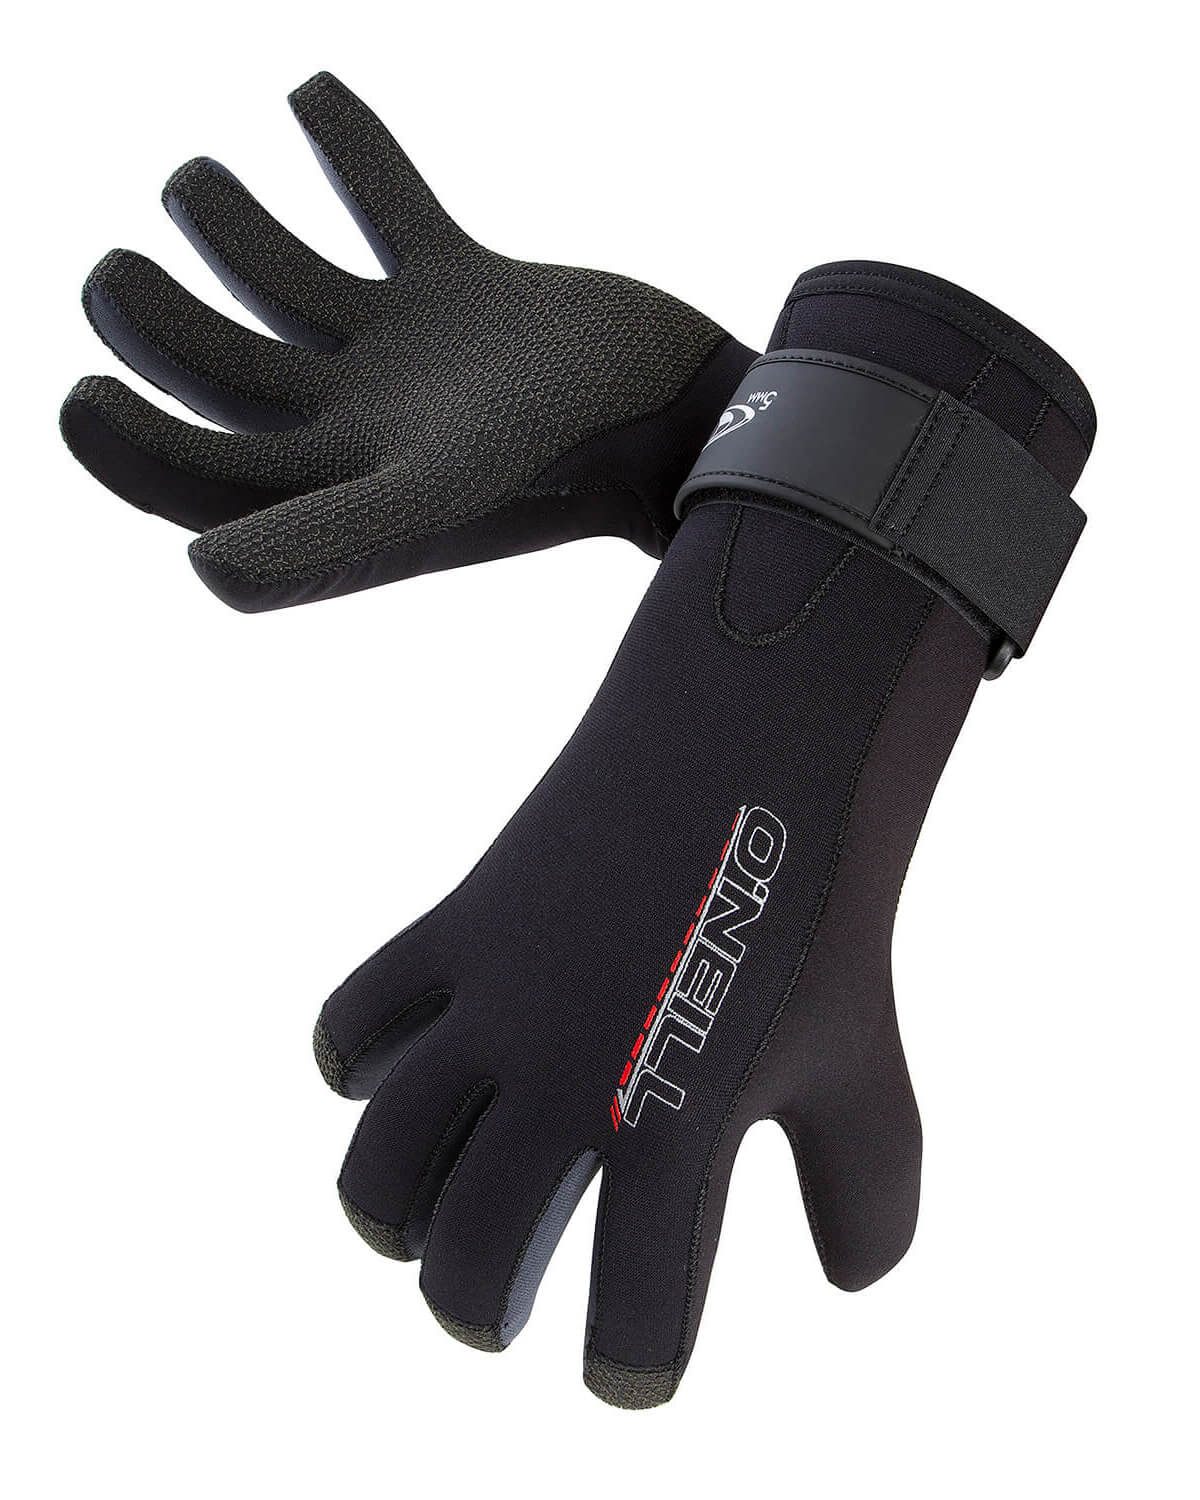 3mm O'Neill Sector Kevlar SCUBA Gloves